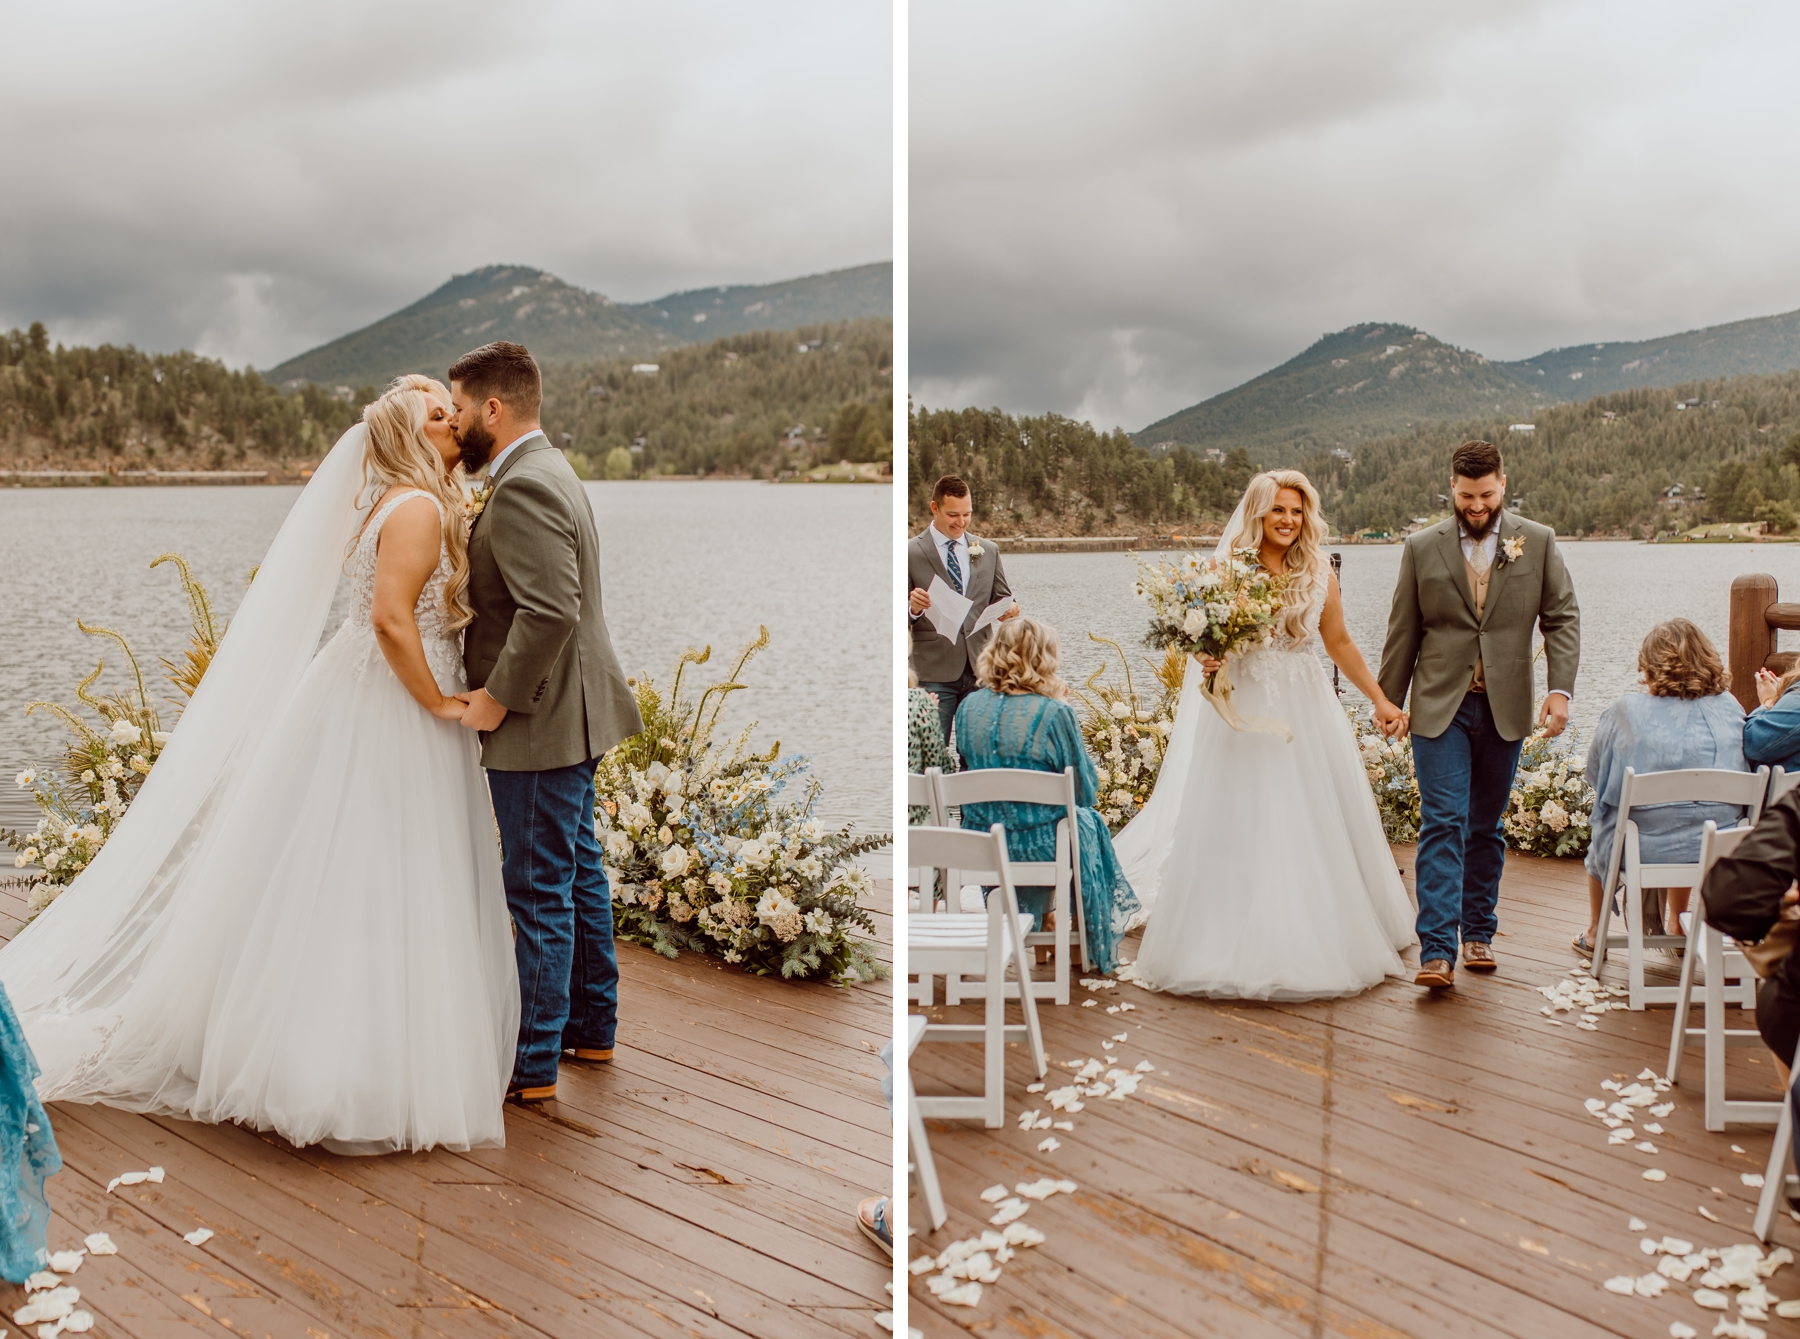 Bride and groom kissing then exiting ceremony at Colorado wedding venue